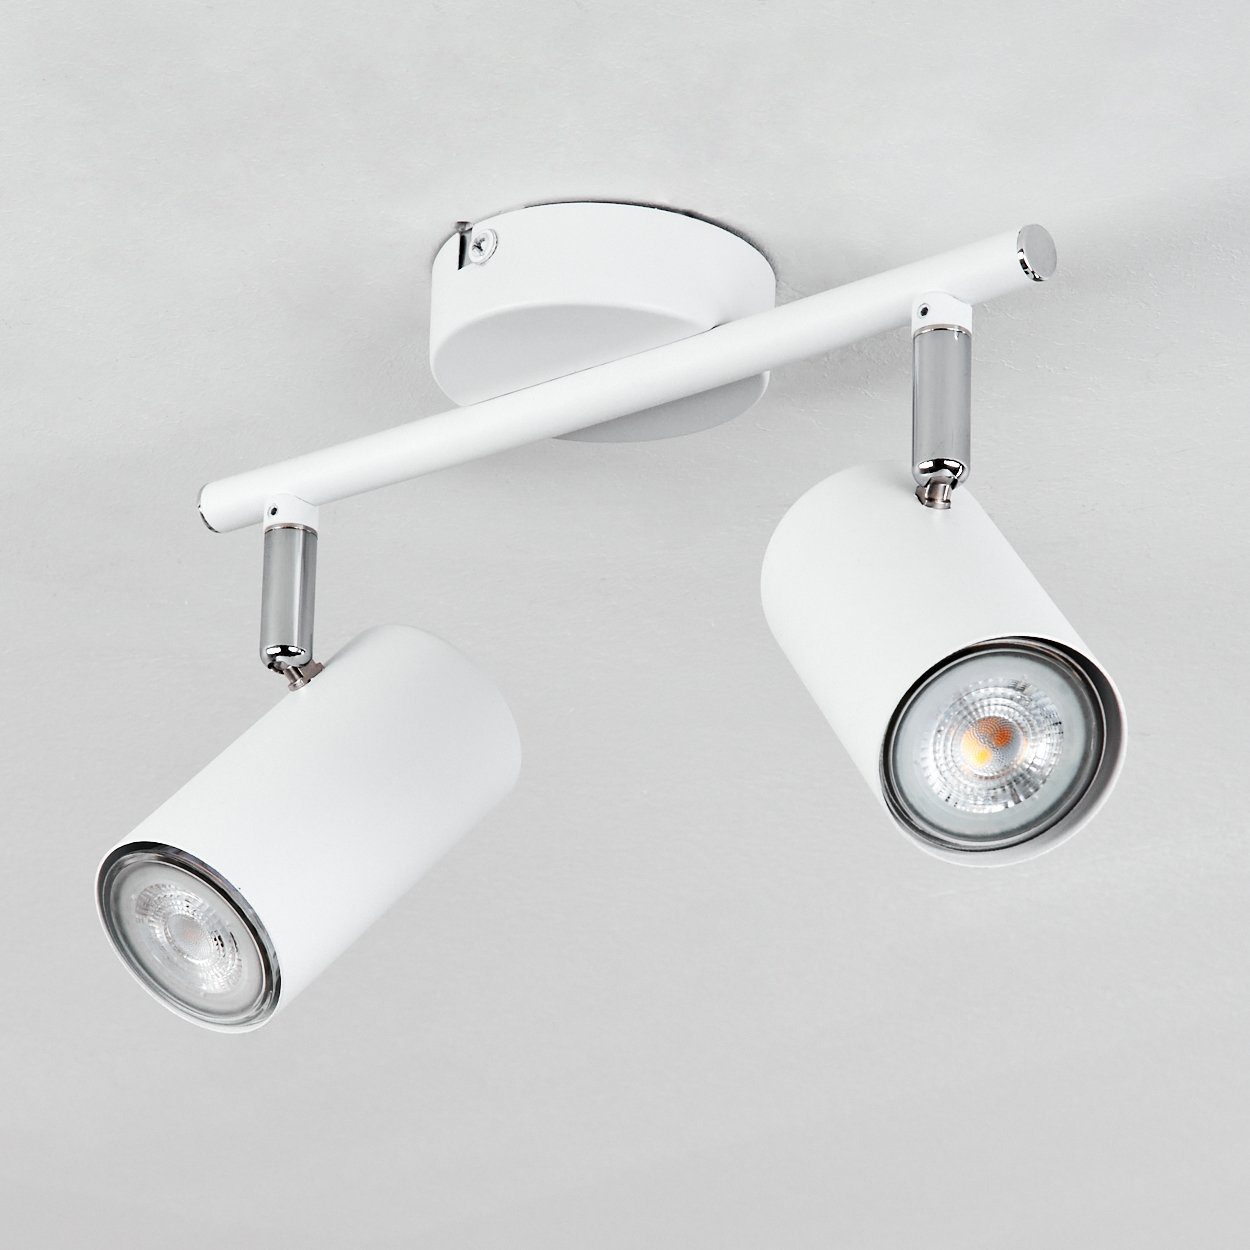 Metall x Deckenleuchte Deckenlampe ohne 2-flammig, aus mit verstellbaren Schirmen, Leuchtmittel, Deckenleuchte GU10 in 2 hofstein moderne Weiß/Chromfarben,